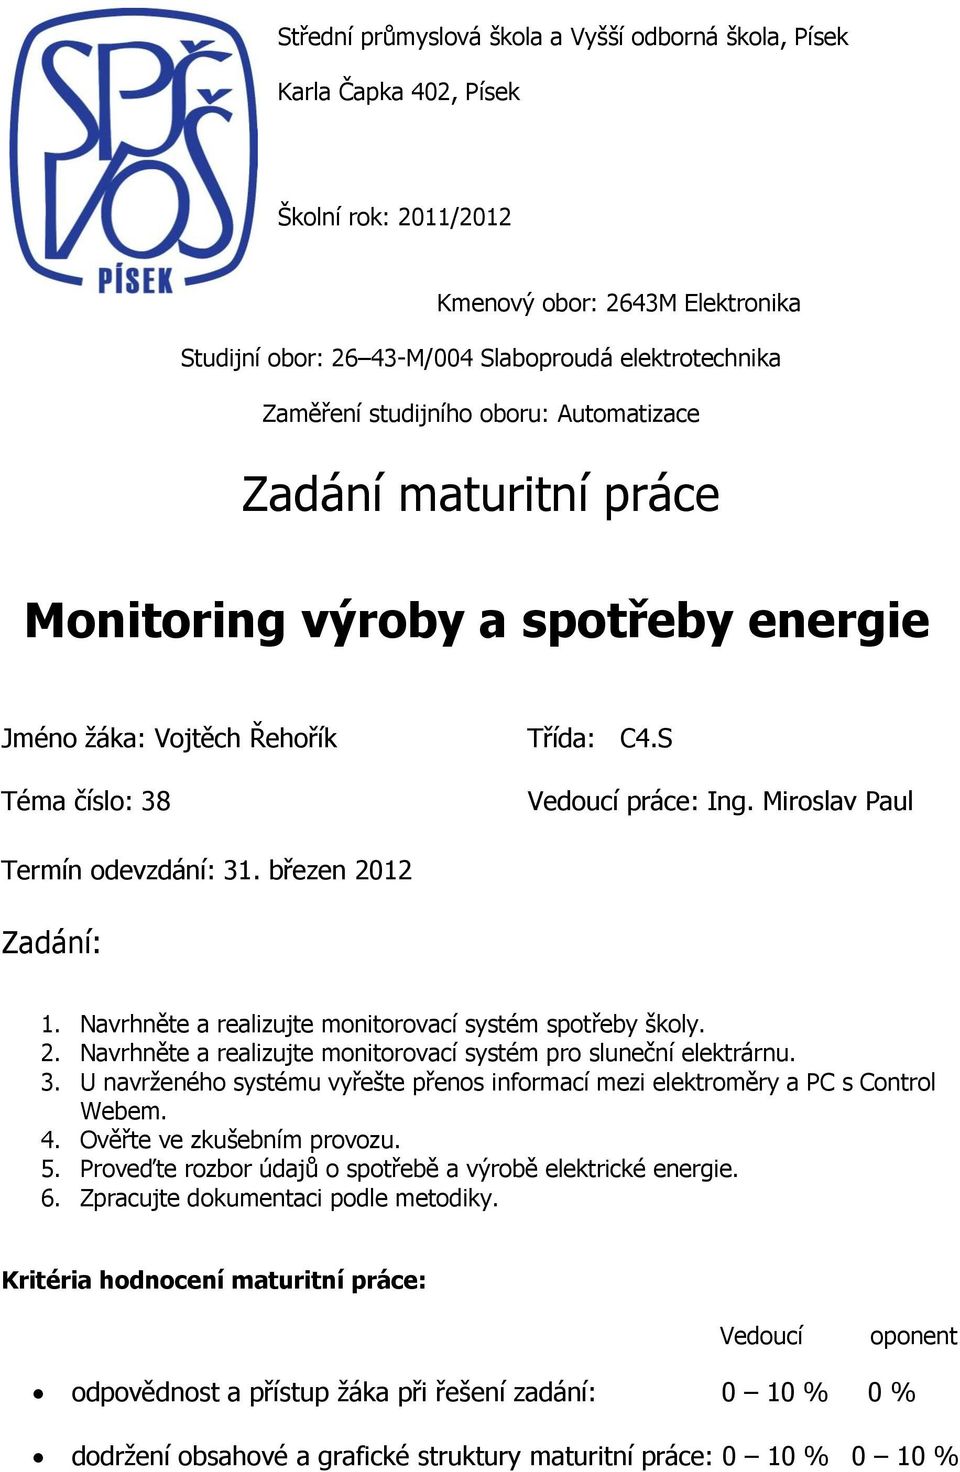 Zadání maturitní práce. Monitoring výroby a spotřeby energie - PDF Stažení  zdarma